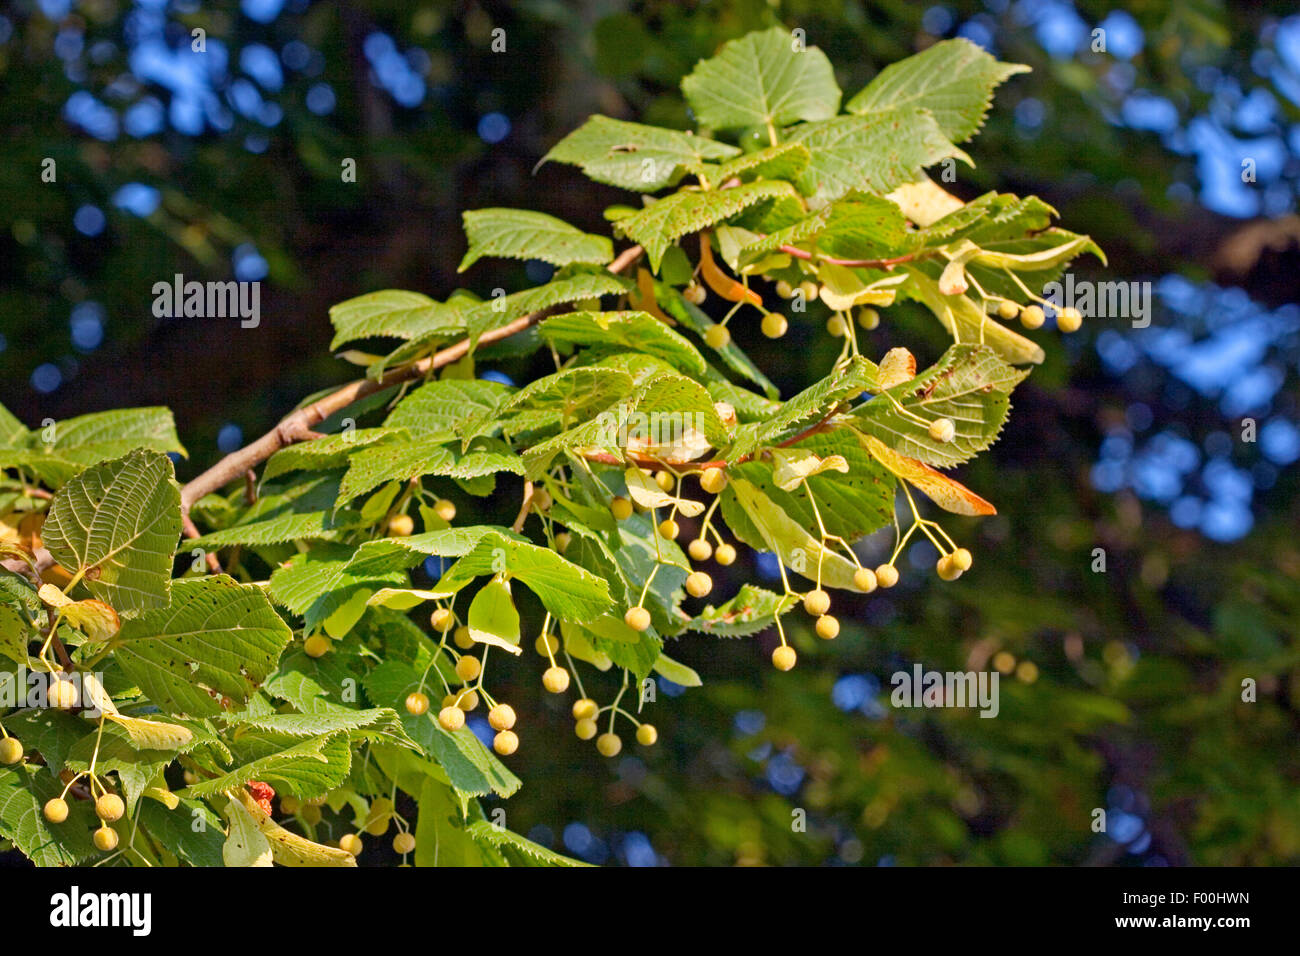 small-leaved lime, littleleaf linden, little-leaf linden (Tilia cordata), branch with fruits, Germany Stock Photo